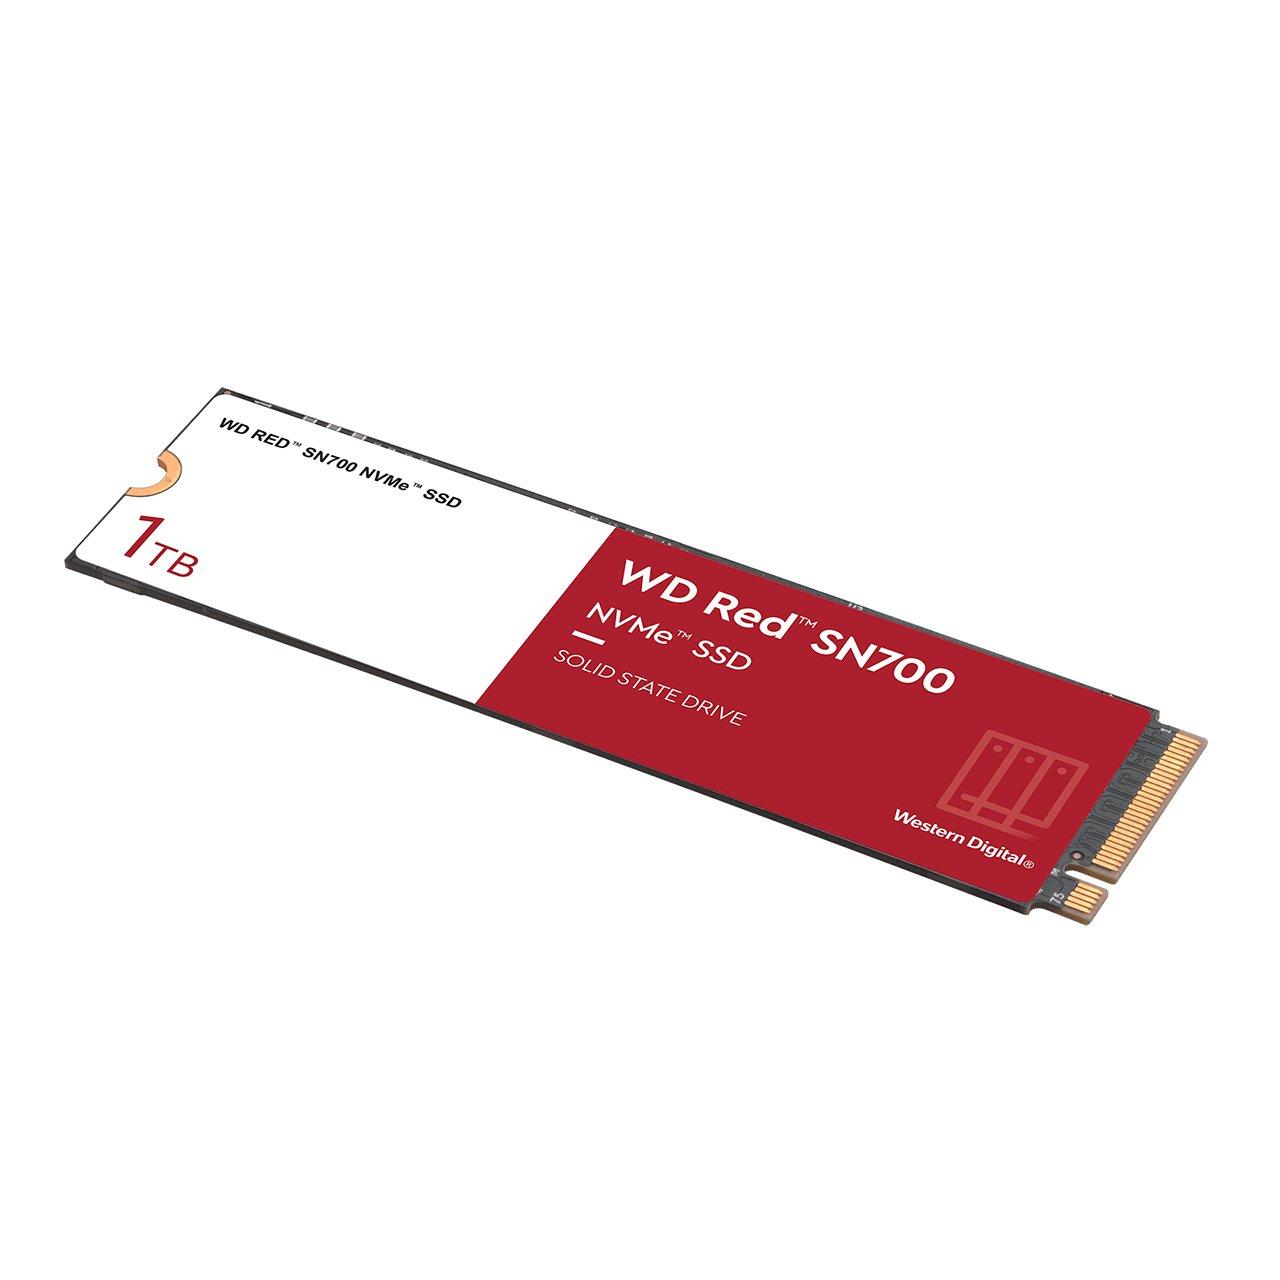 WD  Red SN700 M.2 1 TB PCI Express 3.0 NVMe 